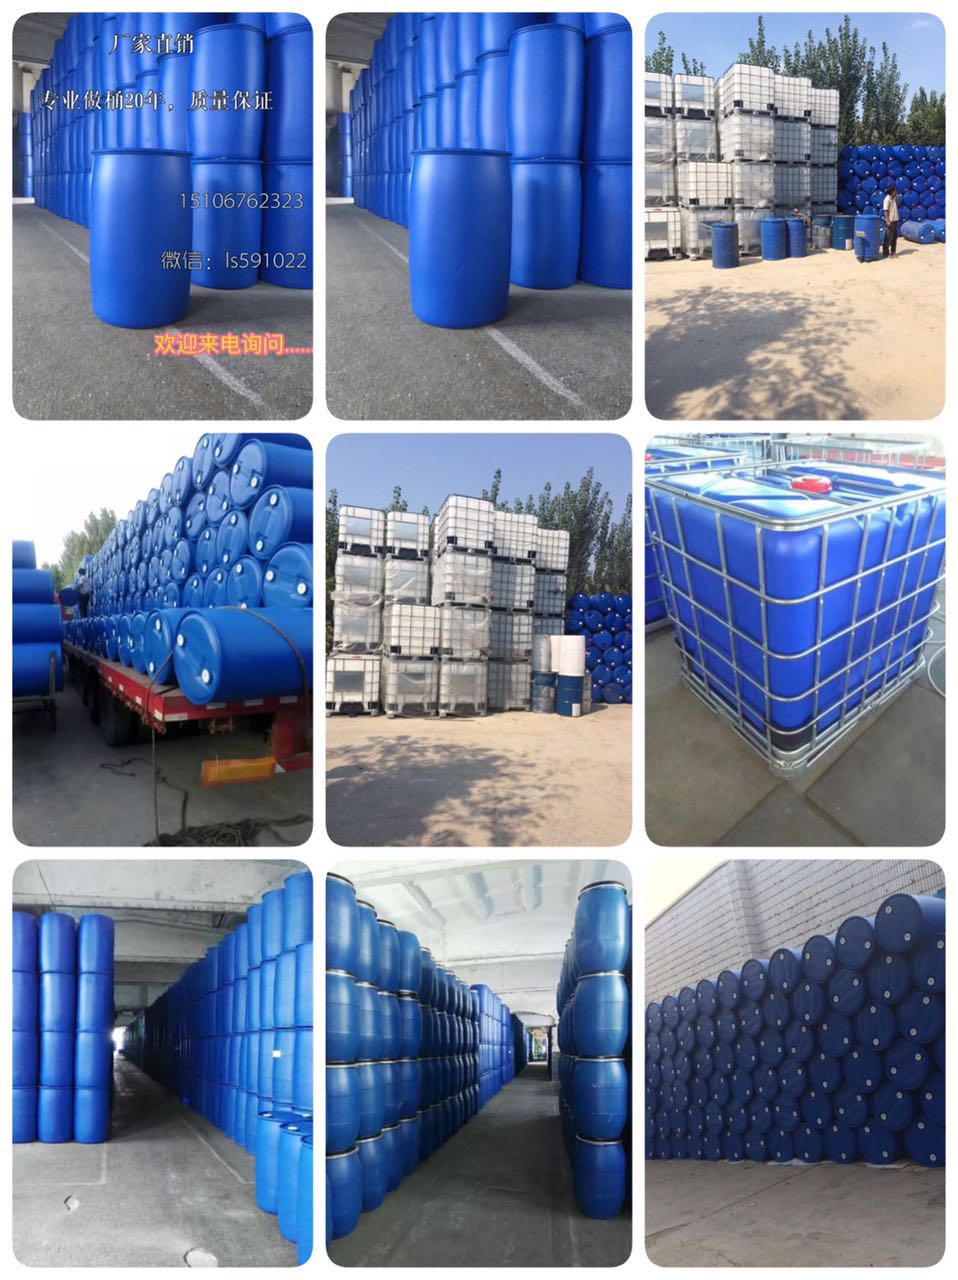 200L化工桶、原料桶、吨桶200L化工桶、原料桶、200L 200L化工桶、原料桶、吨桶